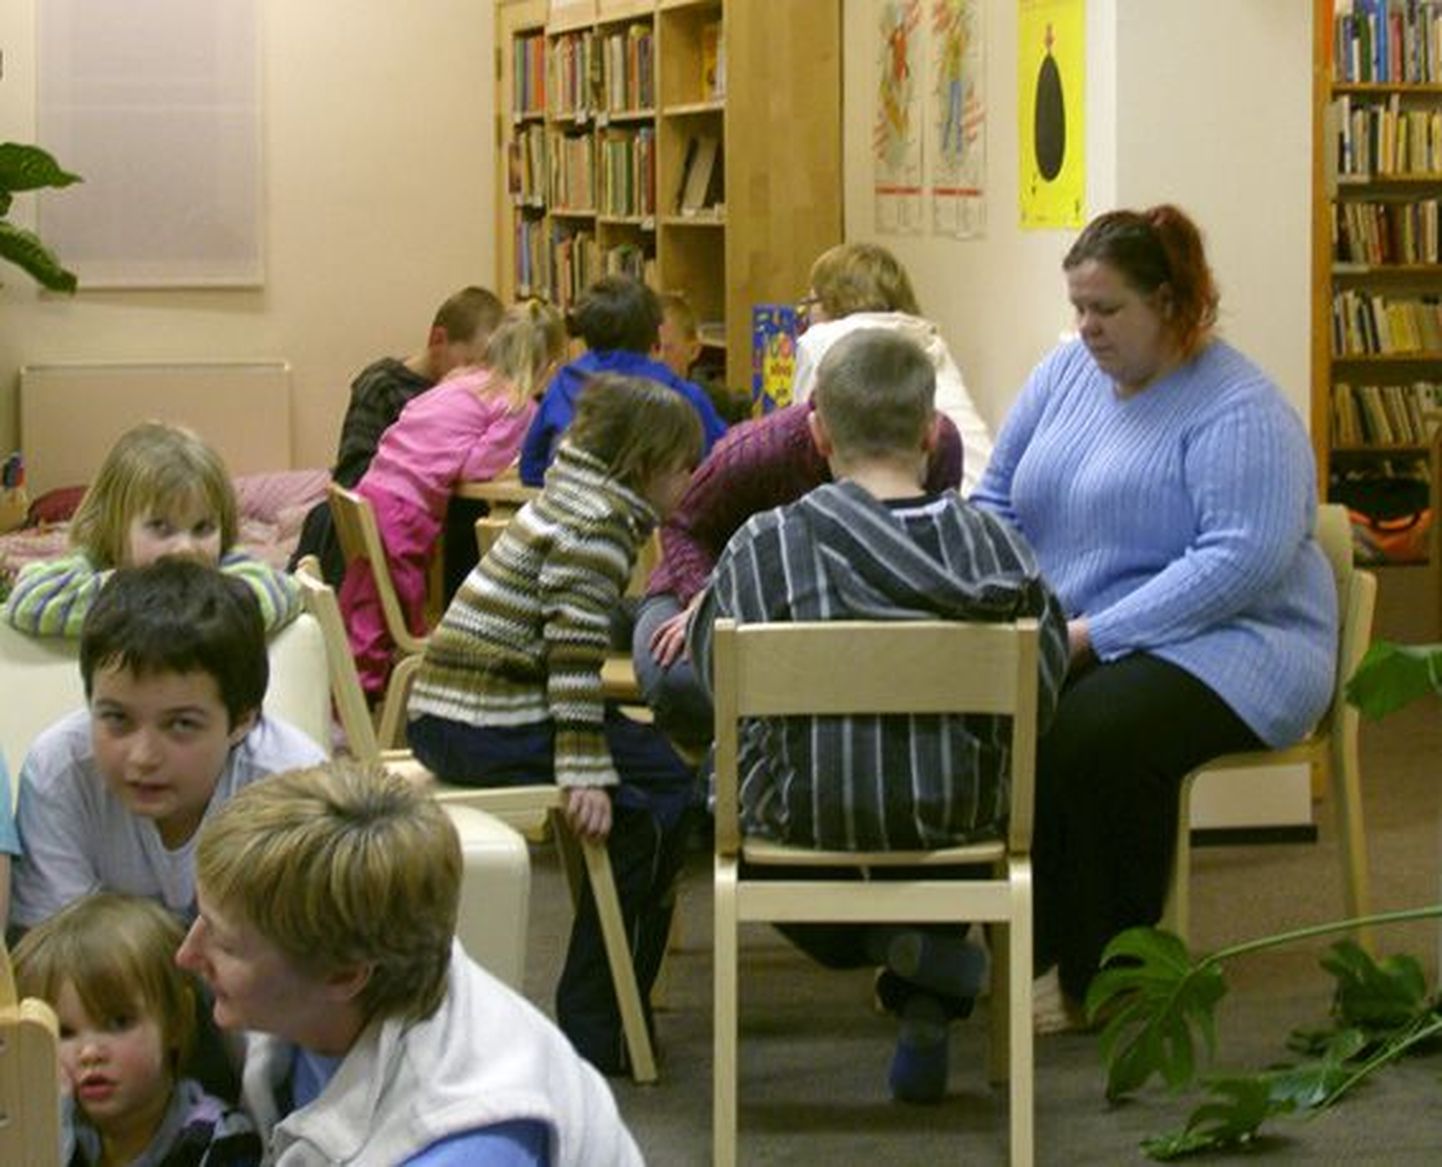 Muuga kooli lastele meeldis raamatukogus eriti see, et sai teineteiselt mõõtu võtta ning keegi ei käskinud magama minna.